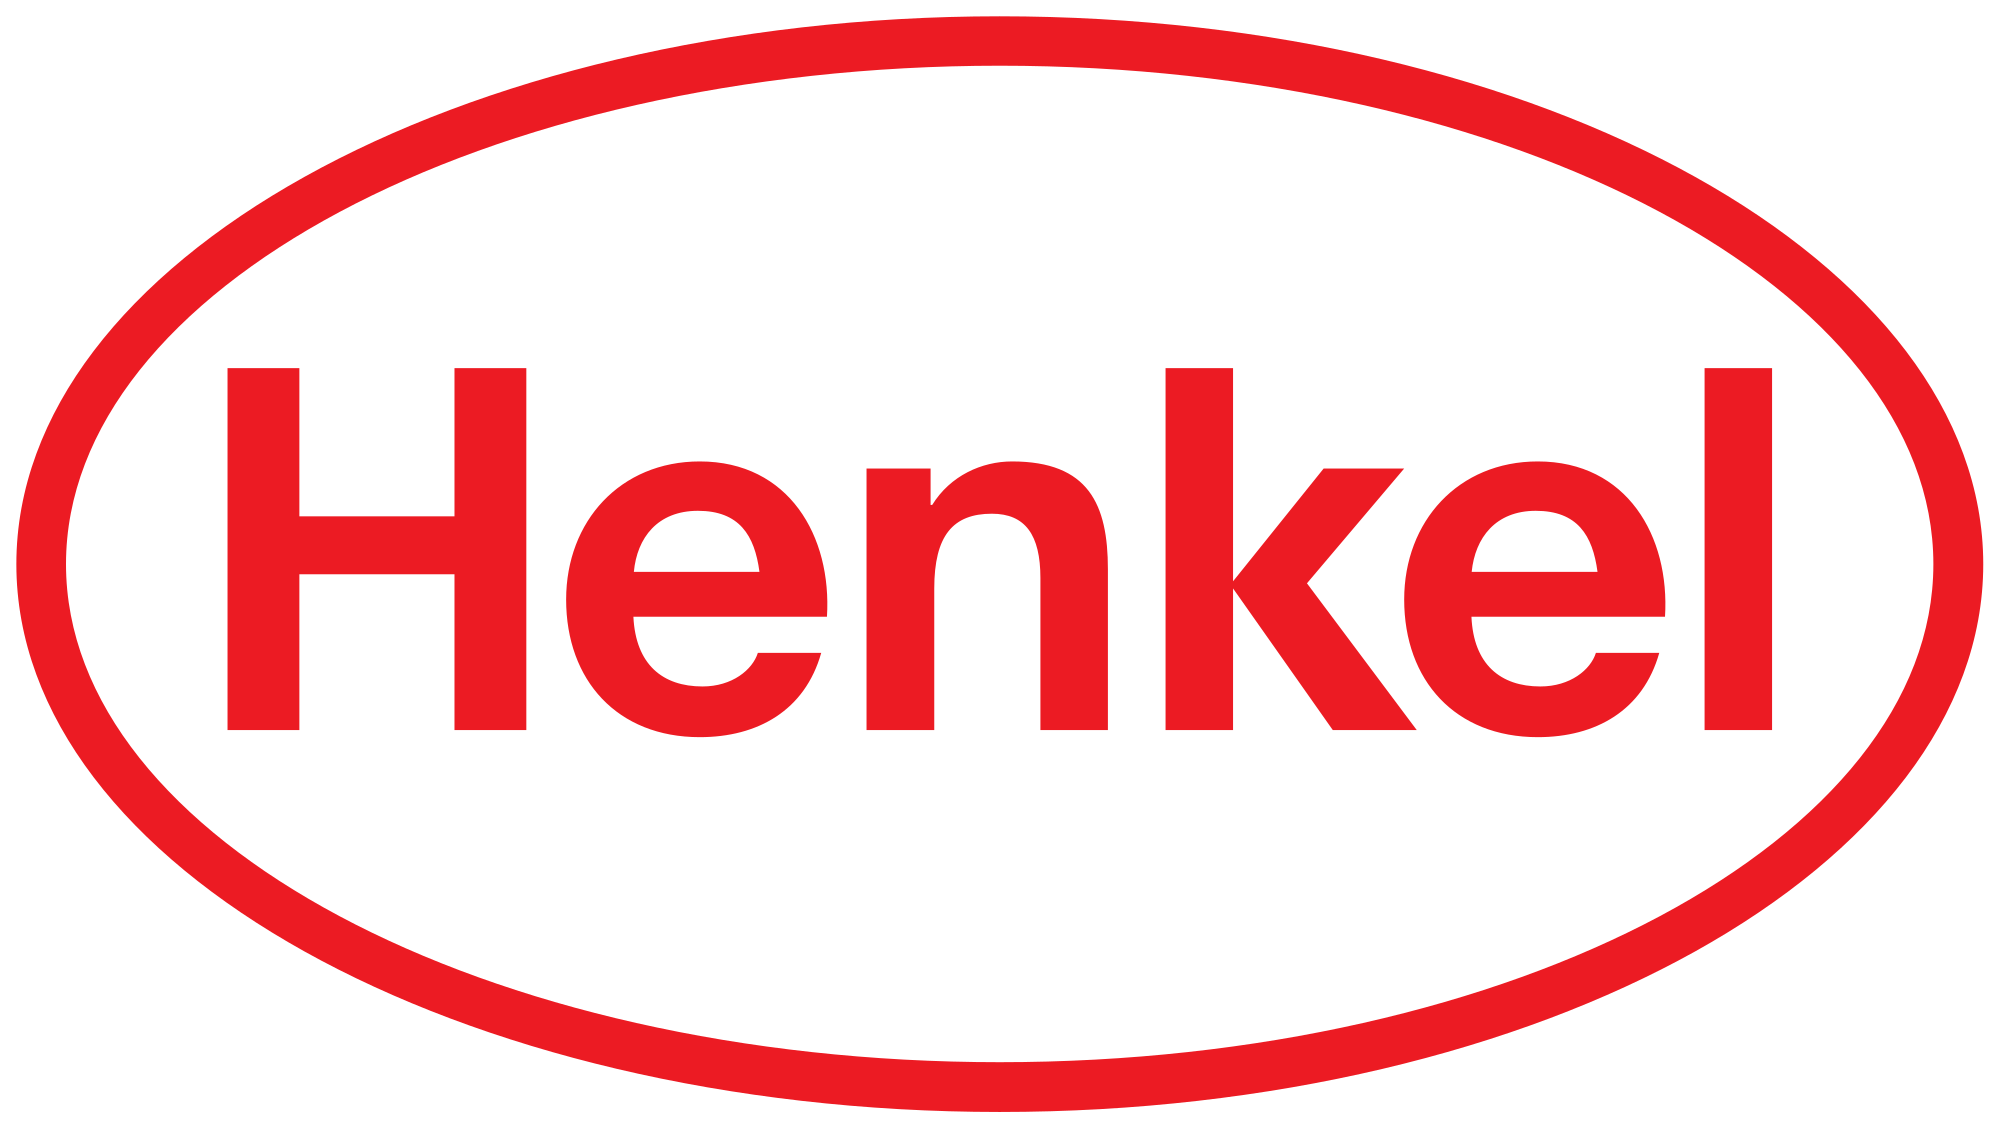 Henkel AG & Co